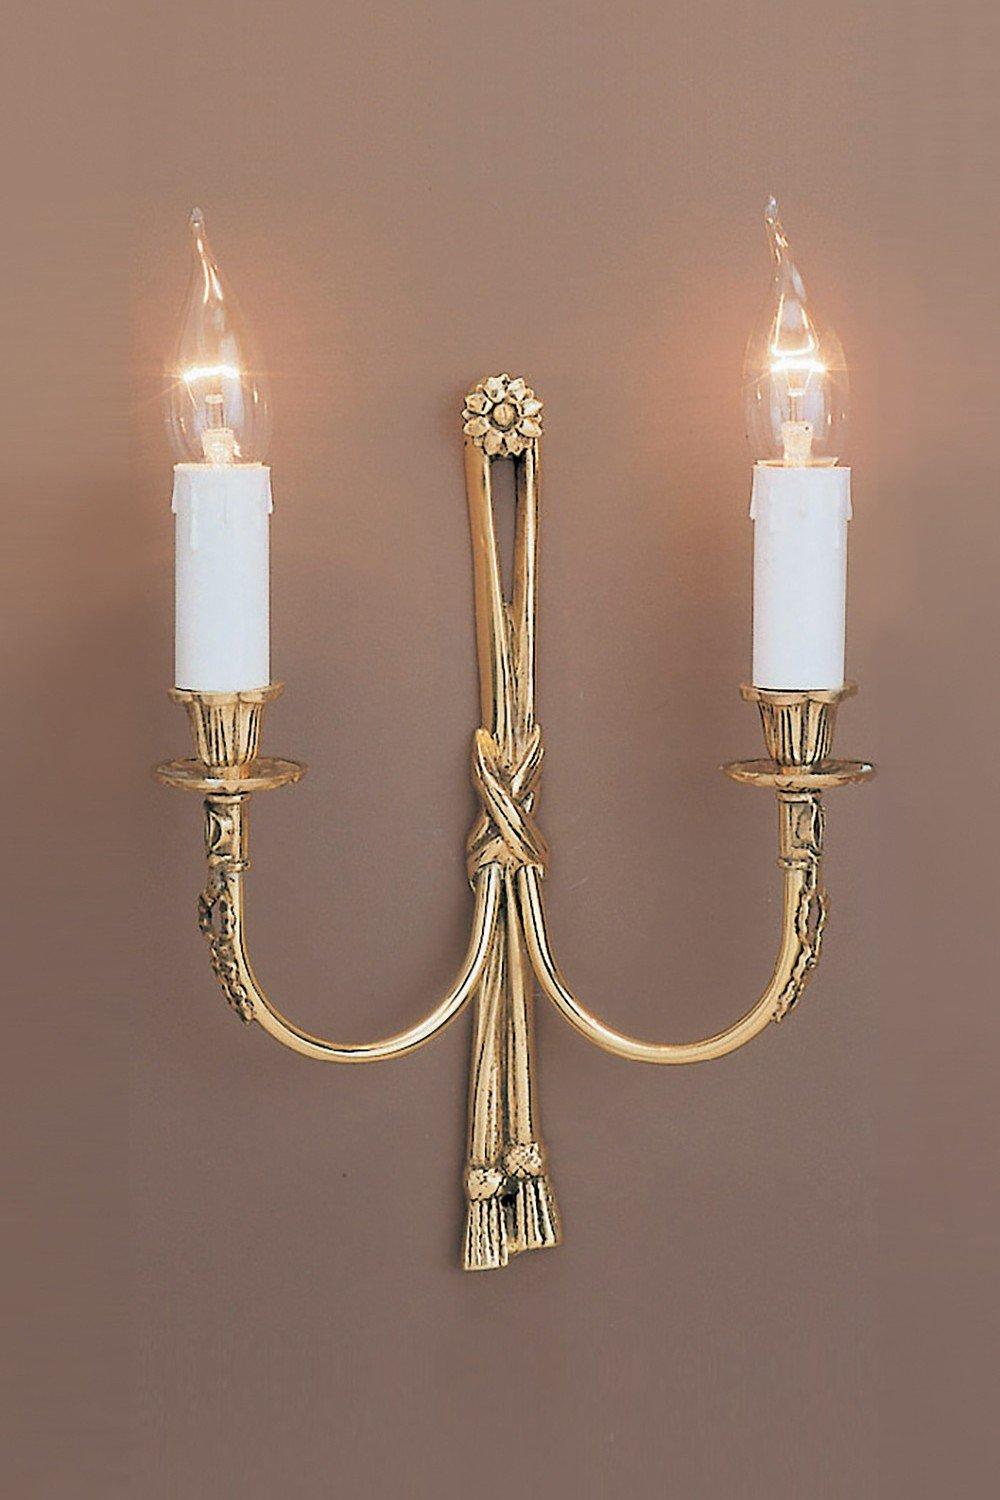 Richmond Polished Brass Candle Wall Lamp